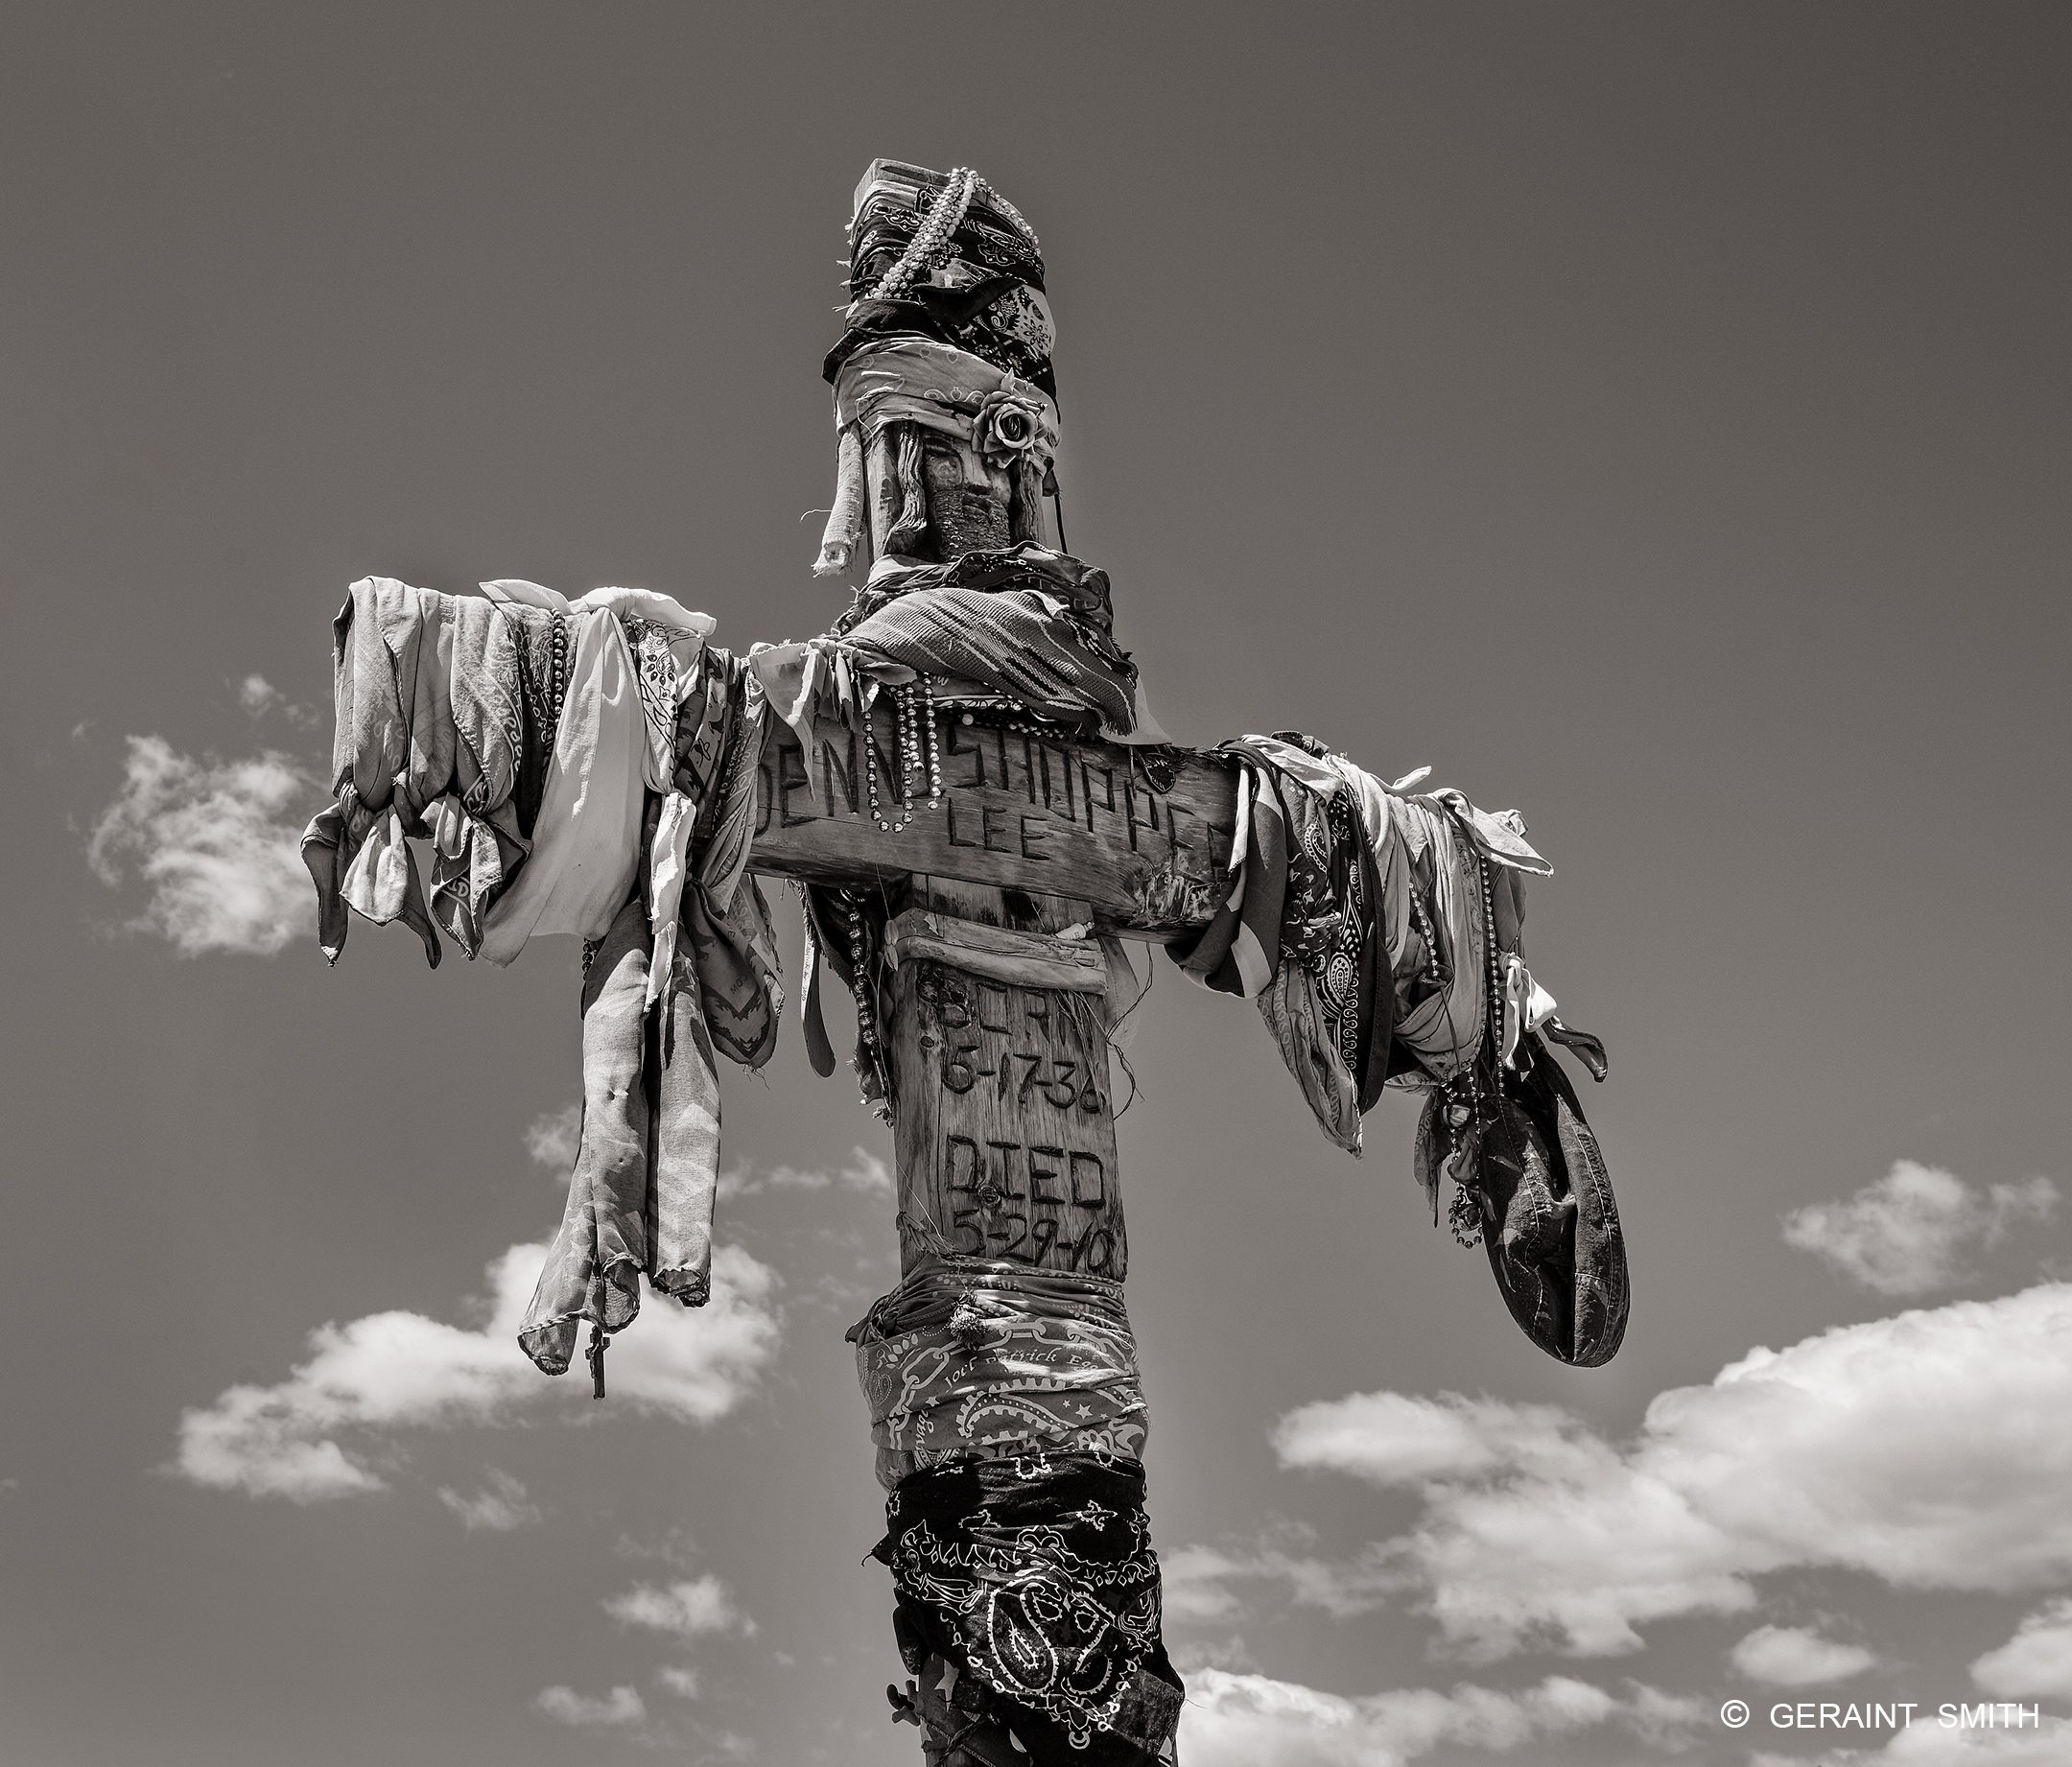 Dennis Hopper's last resting place, Ranchos de Taos, NM. 